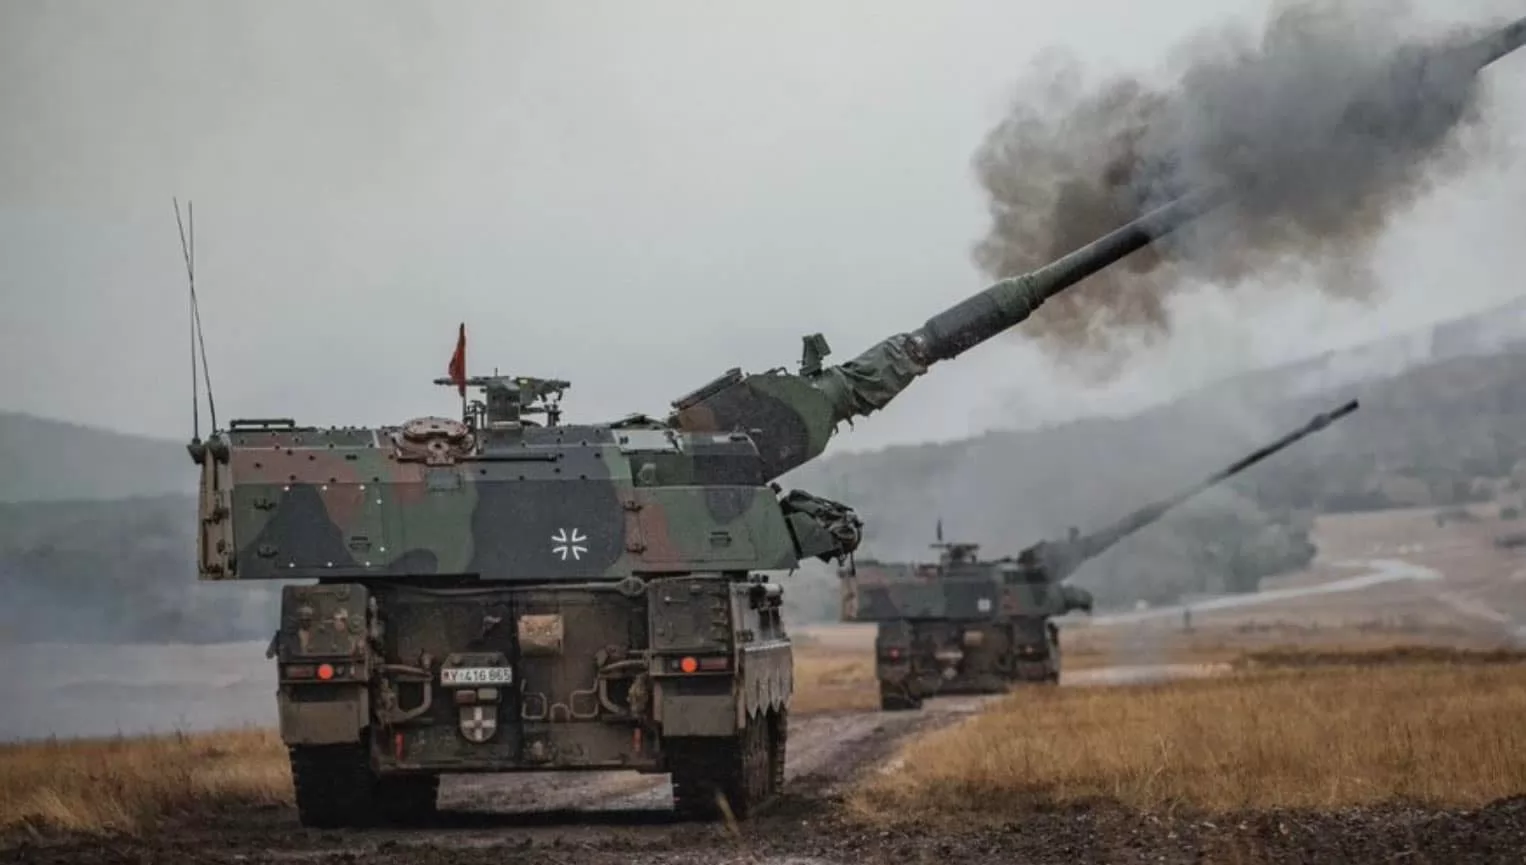 Panzerhaubitze 2000 niszczy rosyjski sprzęt precyzyjnym „inteligentnym” pociskiem SMArt 155 (wideo)